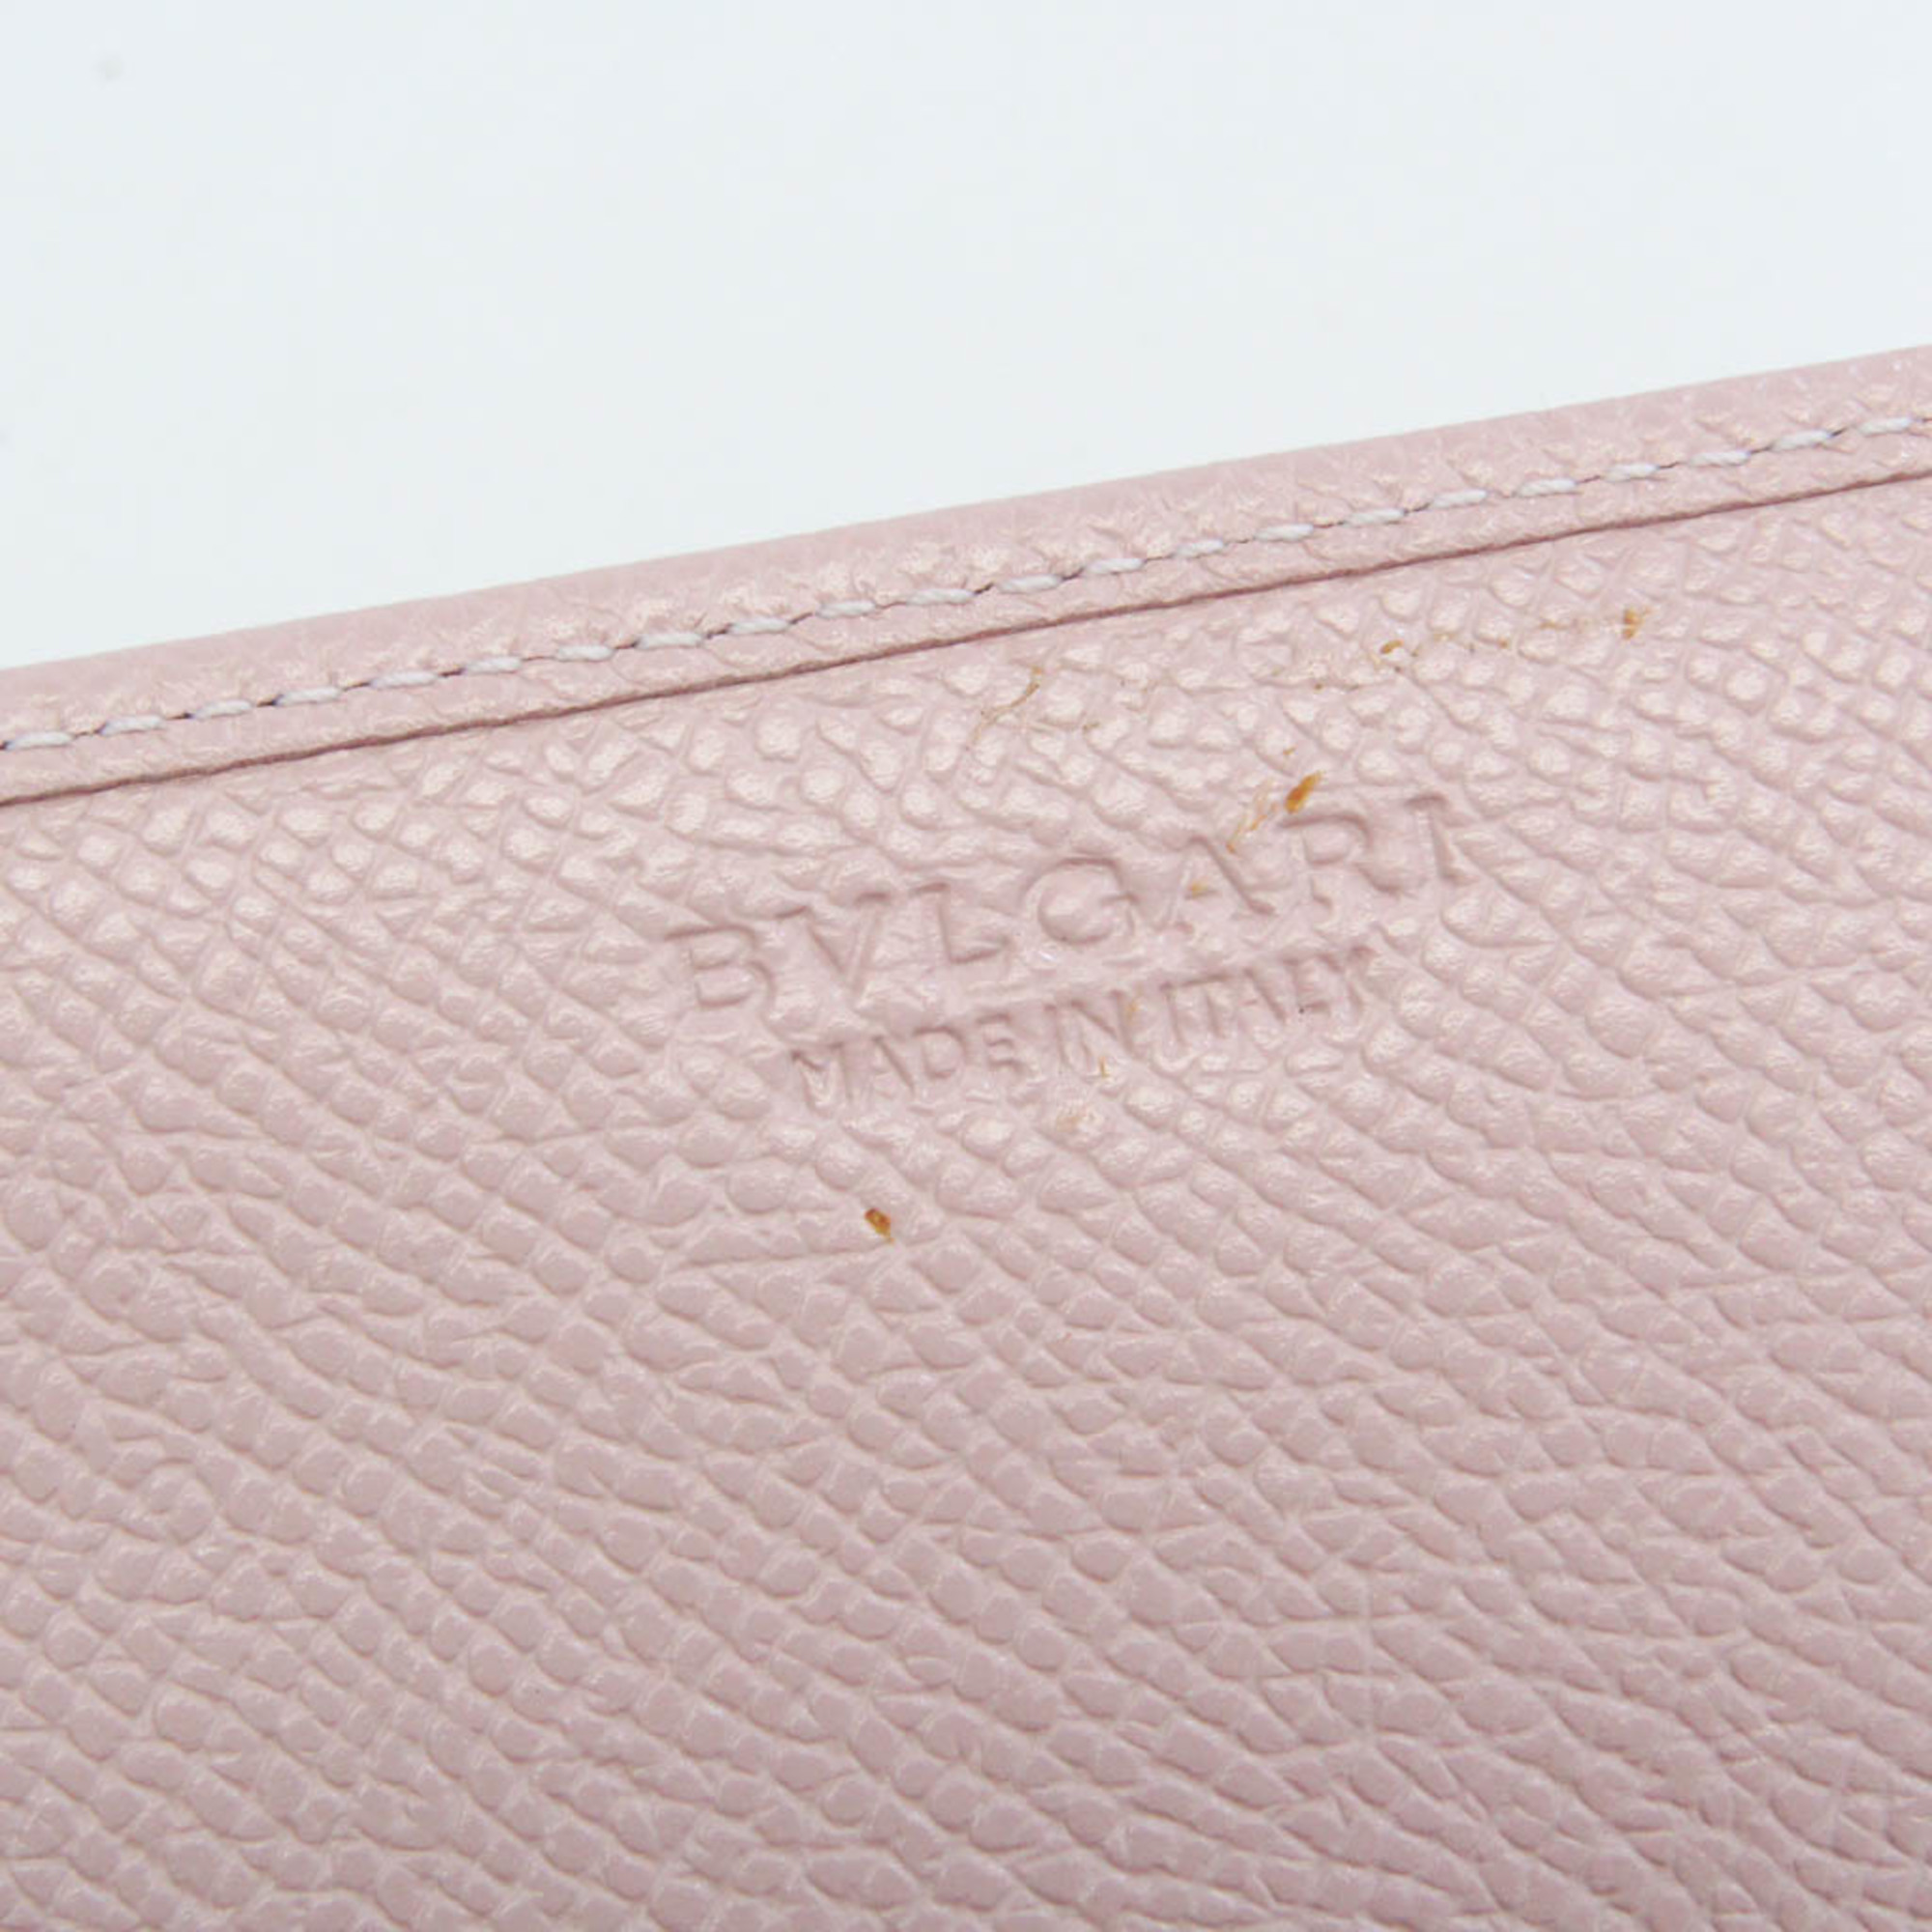 Bvlgari Bvlgari Bvlgari 30402 Leather Card Case Light Pink